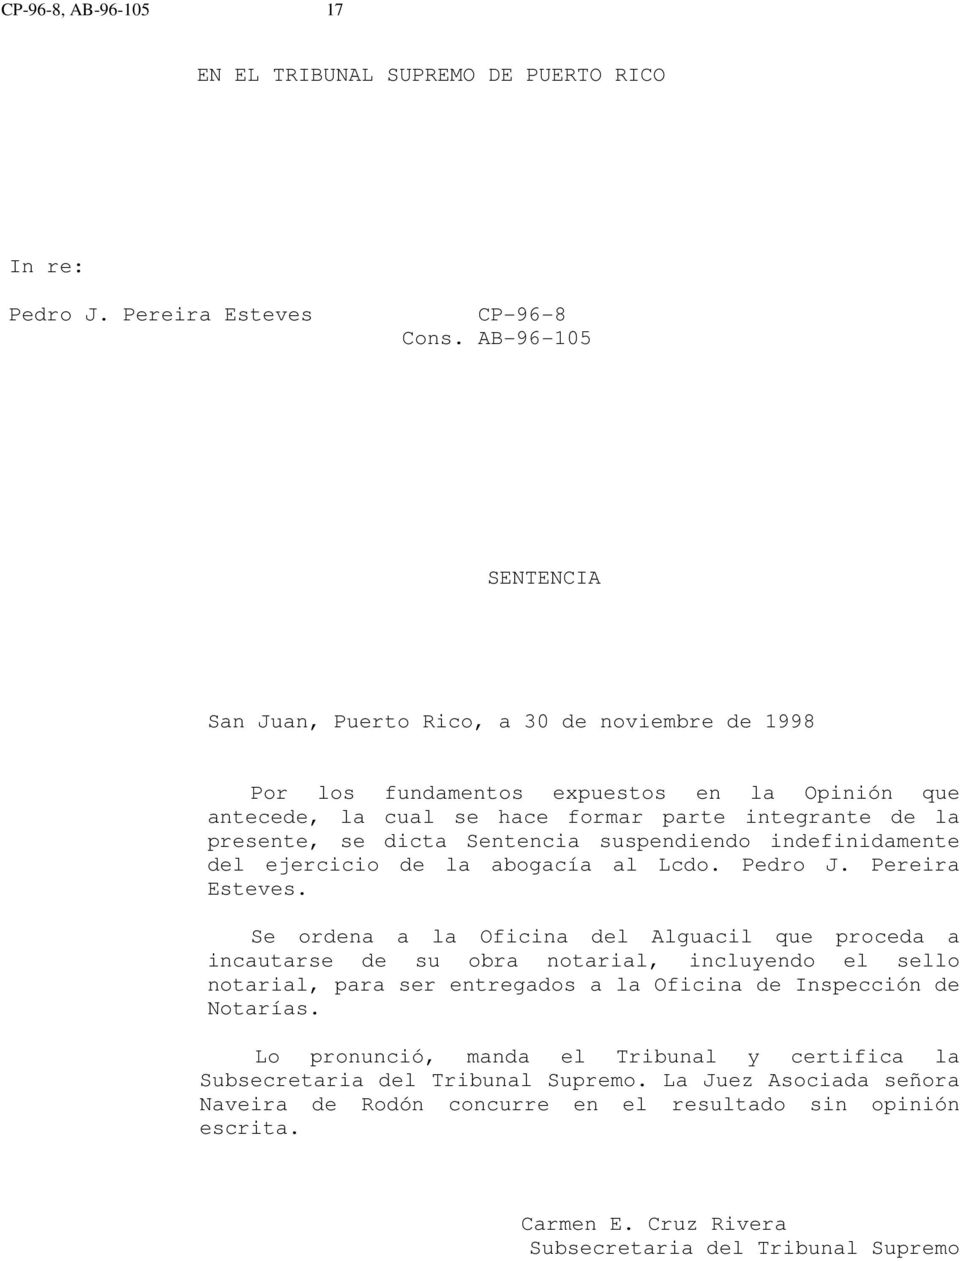 Sentencia suspendiendo indefinidamente del ejercicio de la abogacía al Lcdo. Pedro J. Pereira Esteves.